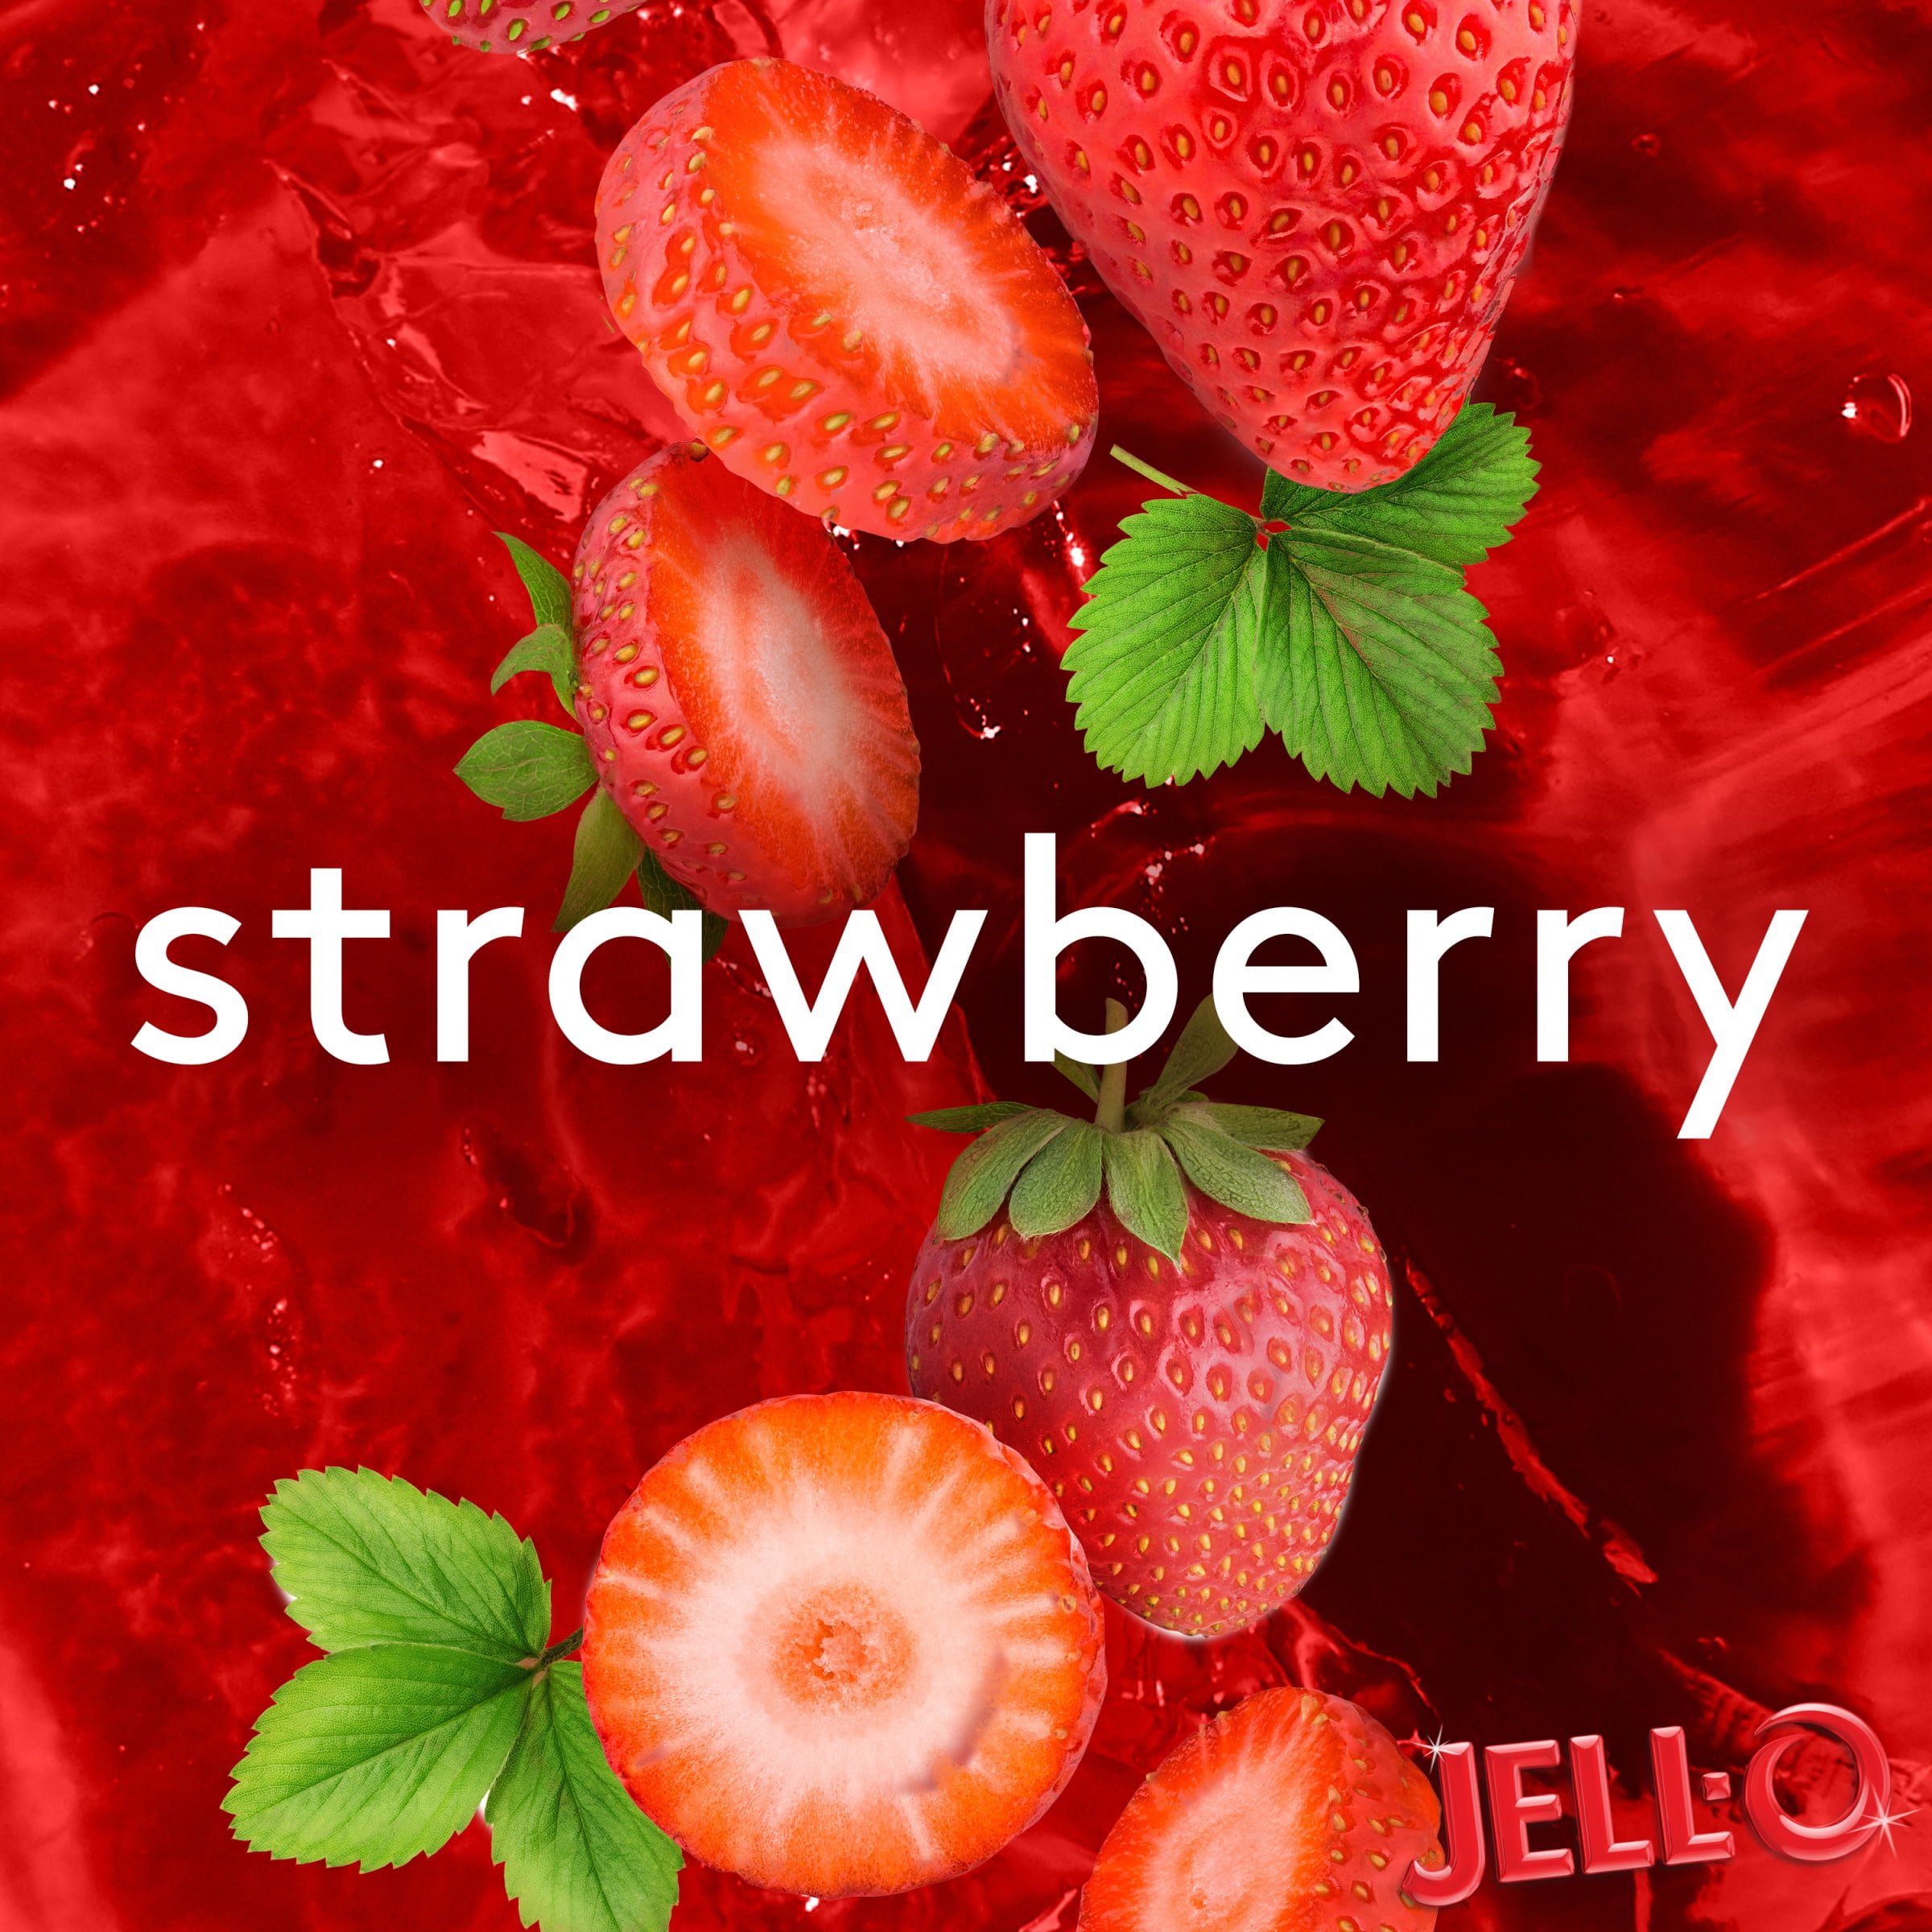 Jell O Original Strawberry Ready To Eat Gelatin Snacks Value Pack 8 Ct Cups Walmart Com Walmart Com